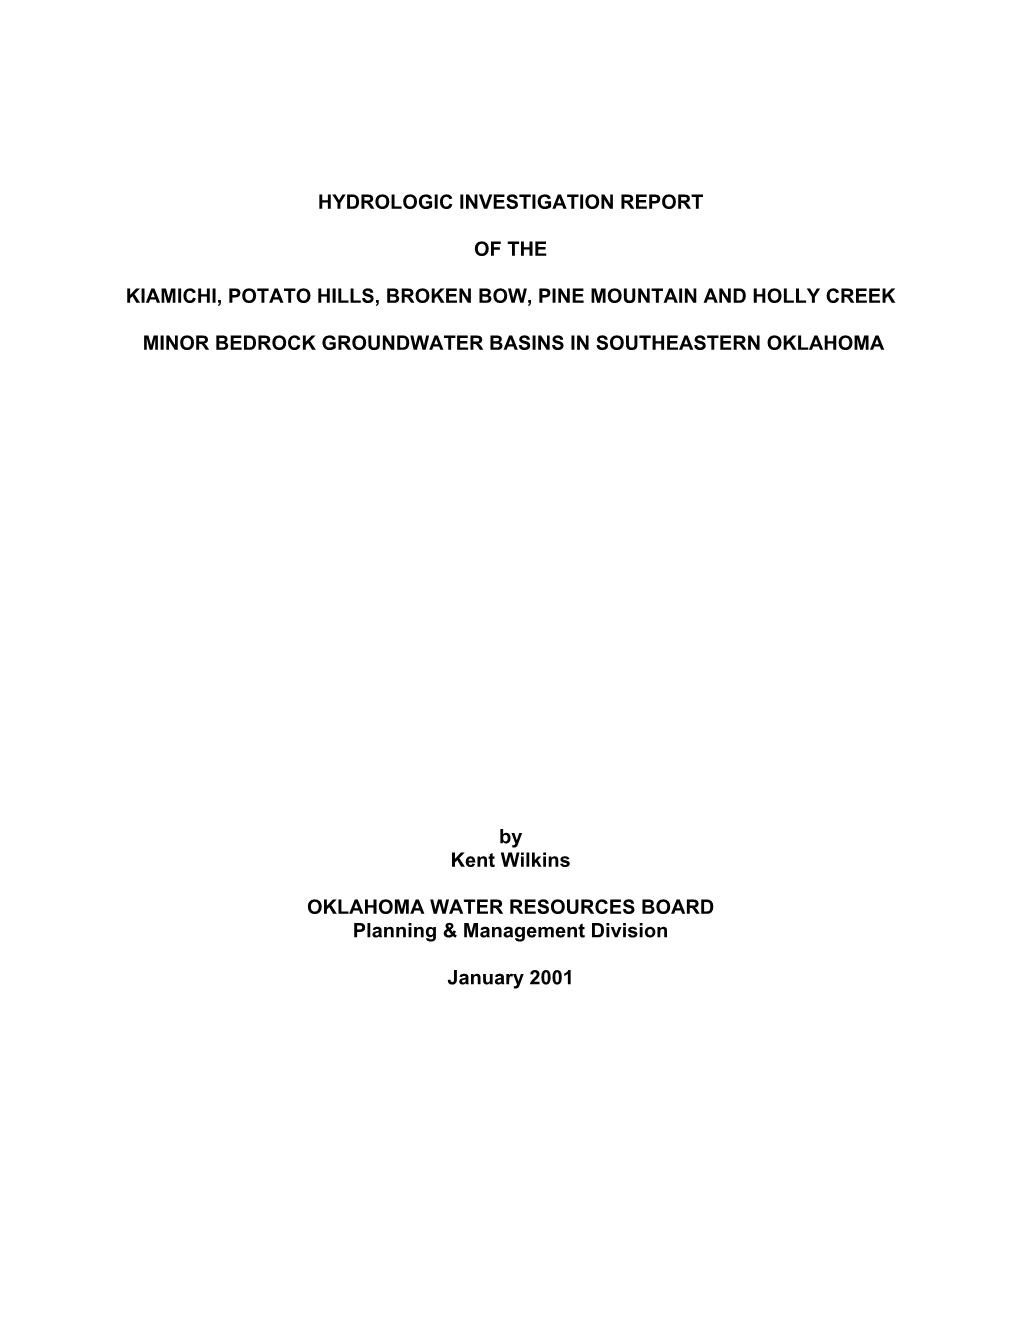 Hydrogeologic Investigation Report of the Kiamichi, Potato Hills, Broken